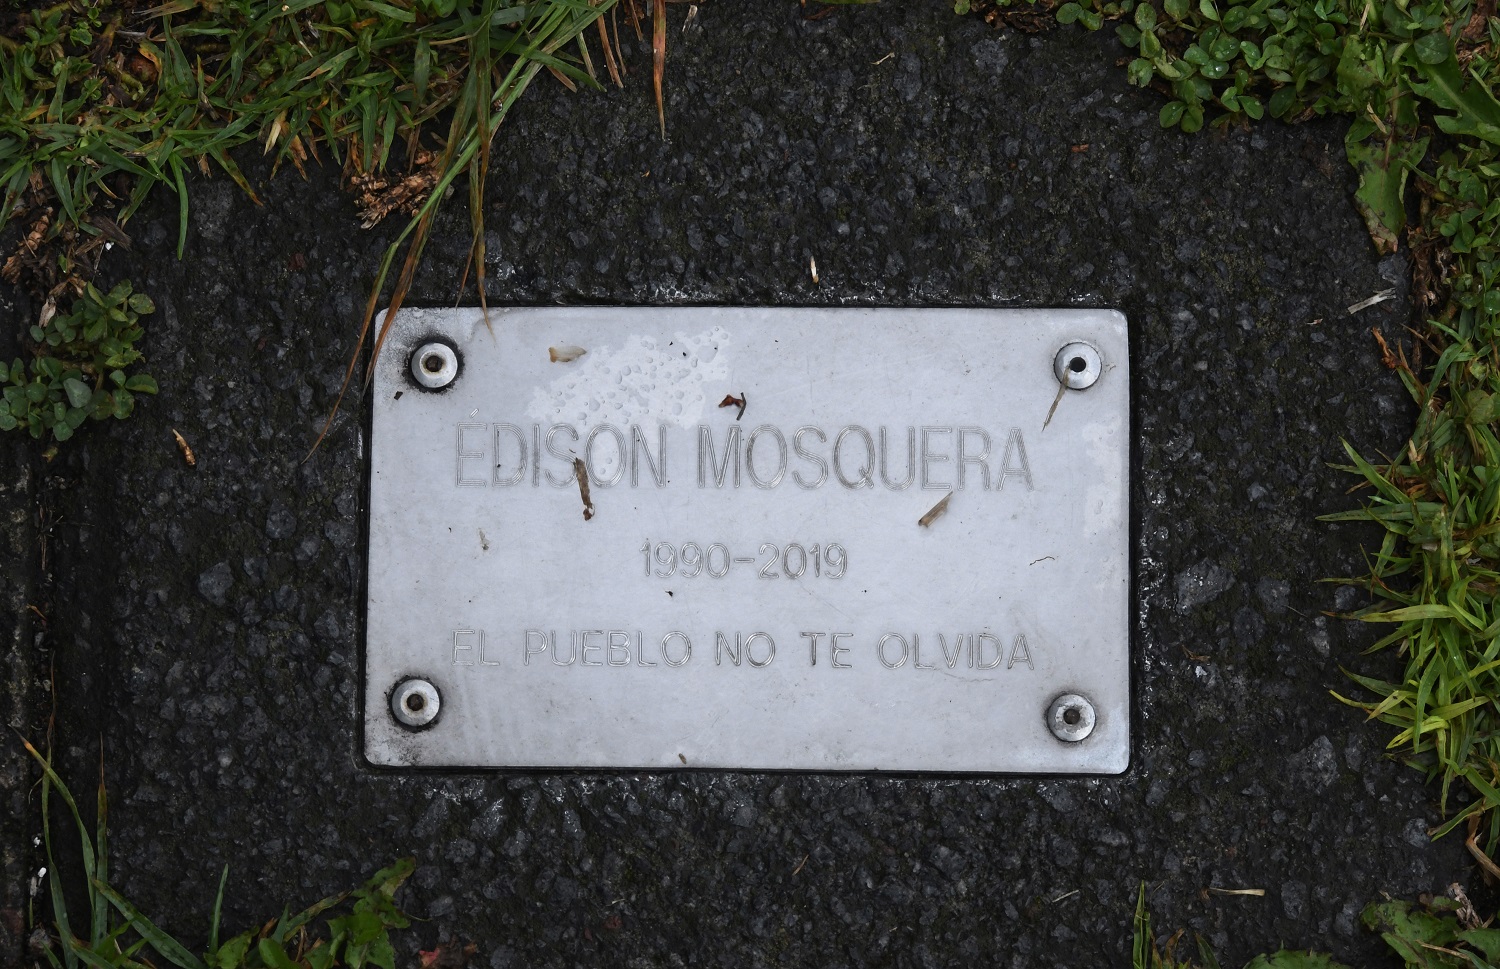 Una placa en memoria de Édison Mosquera está instalada en el parque El Arbolito, en el centro norte de Quito, donde se concentraron las manifestaciones en octubre de 2019 | Foto: Carlos Granja / EL UNIVERSO